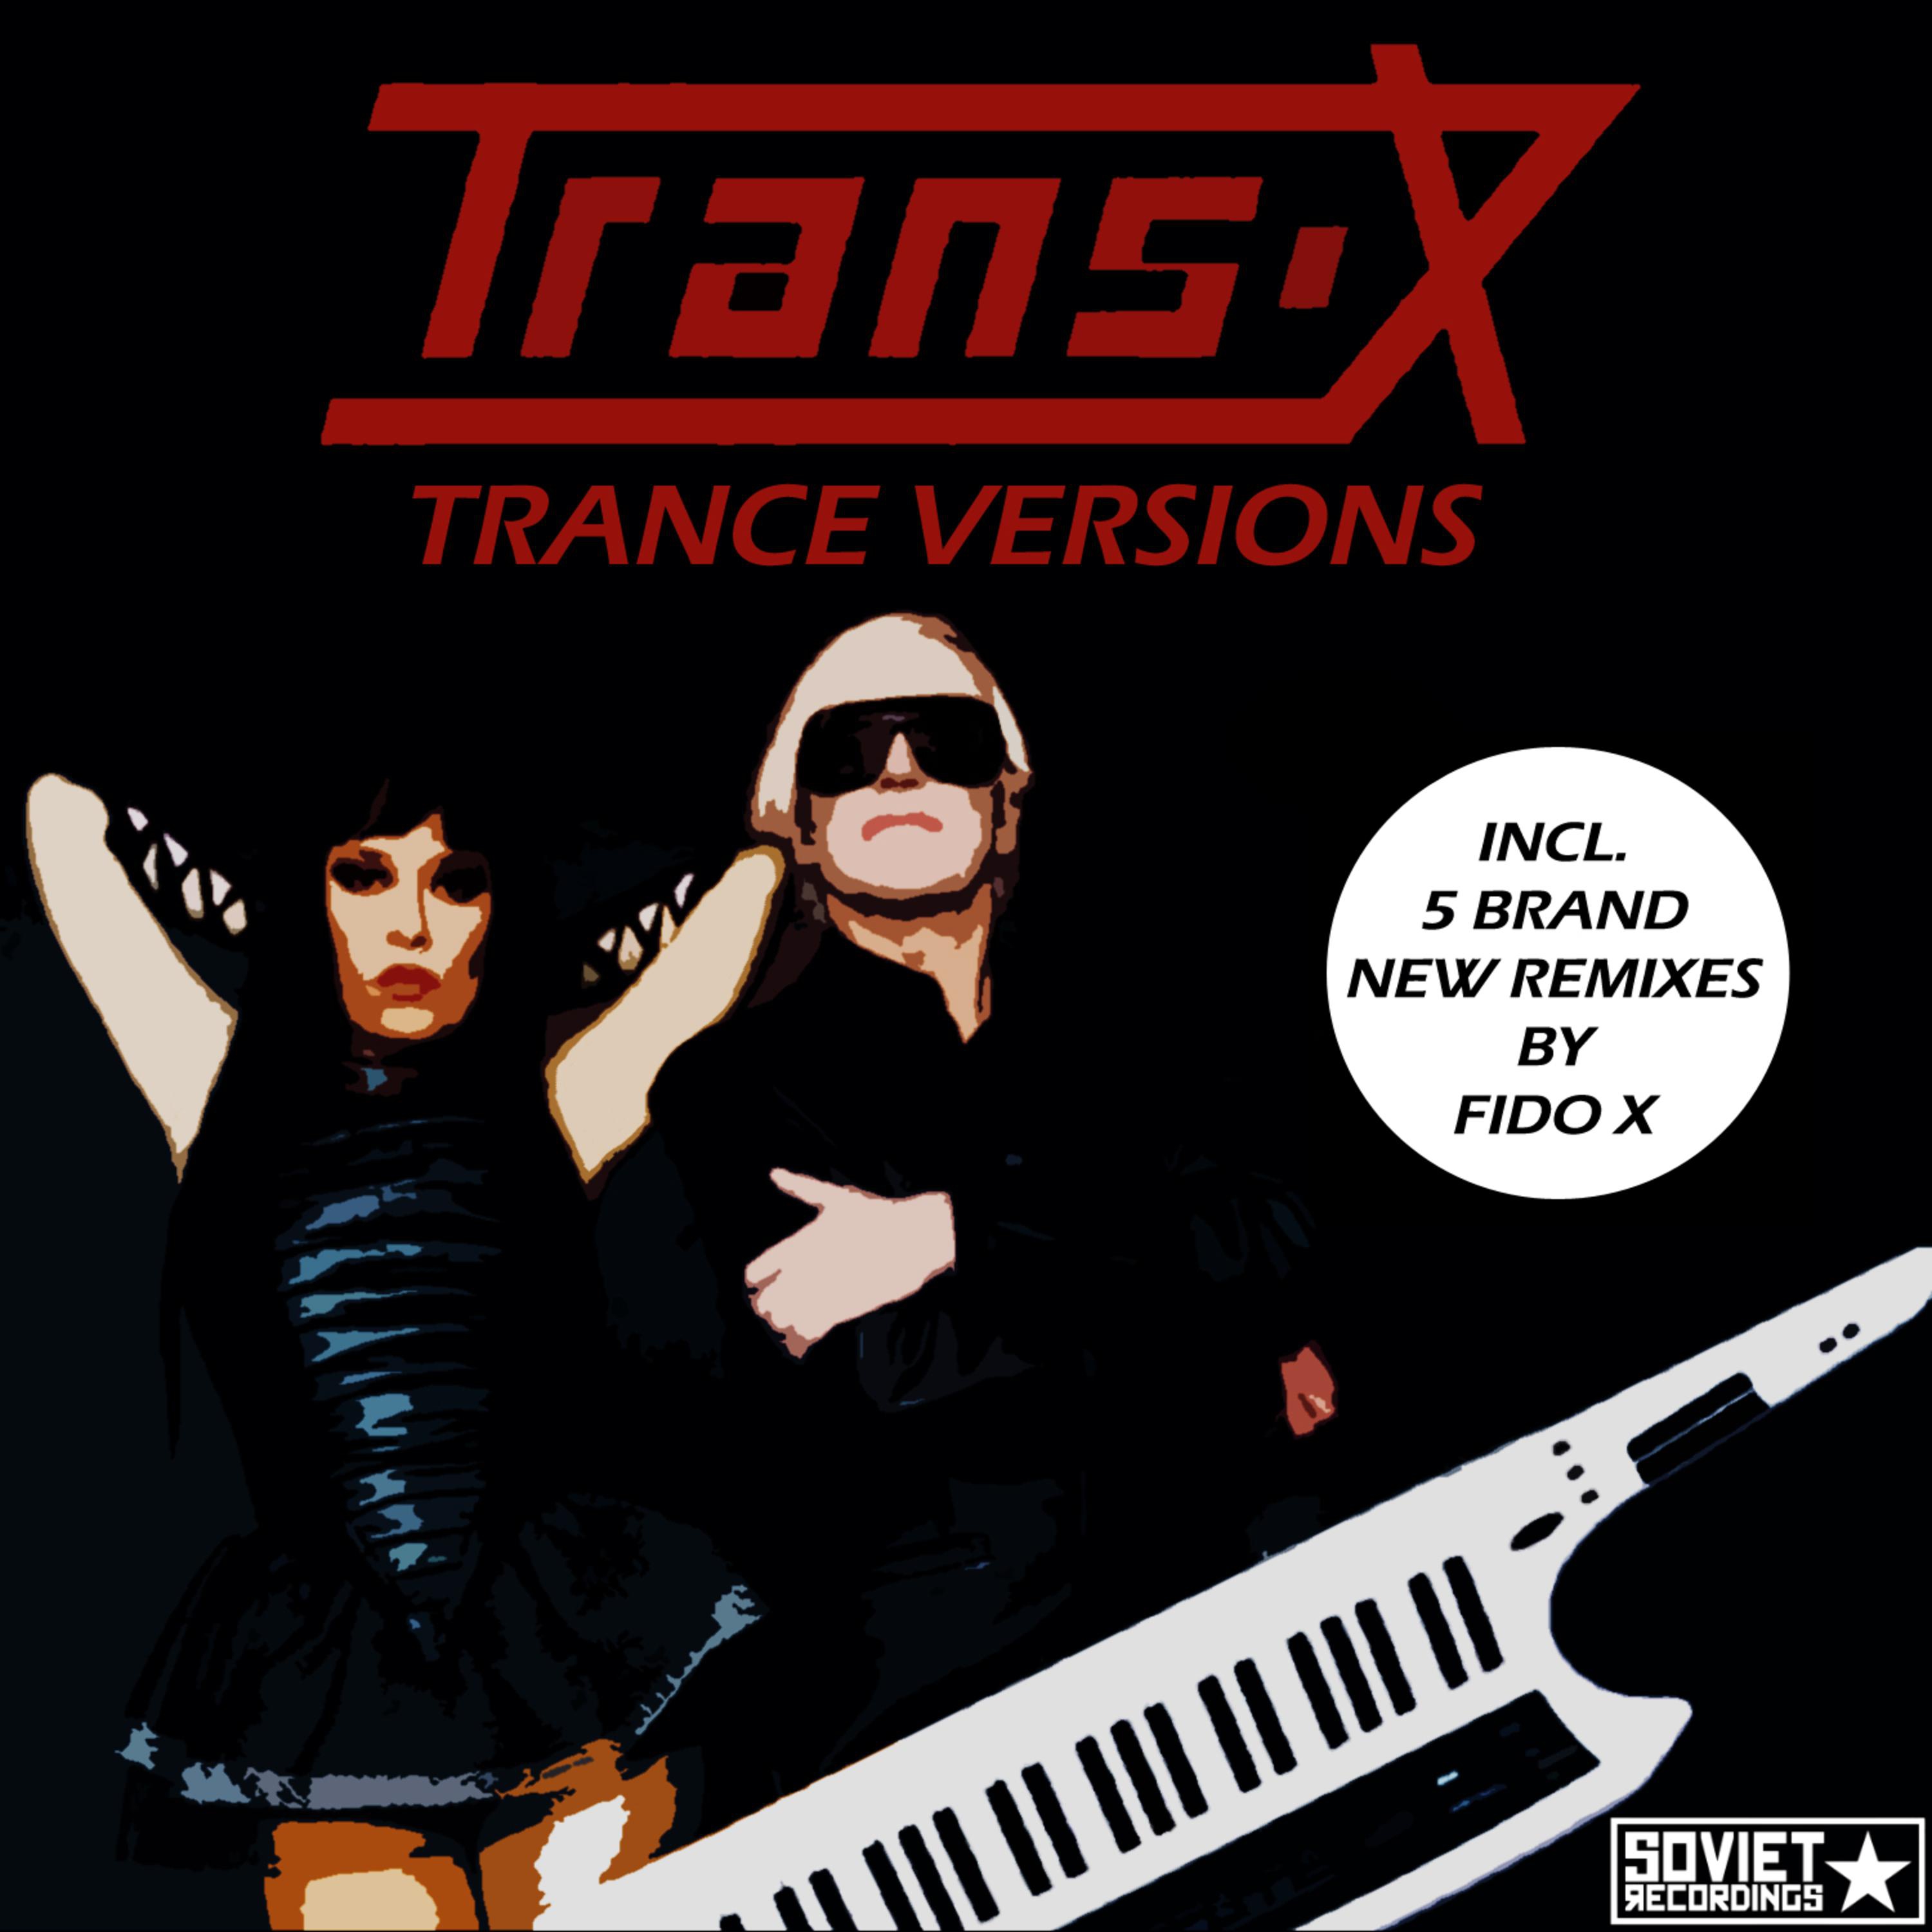 Trance x. Trans x. Группа Trance x. Обложки транс альбомов. Солистка Trans-x.